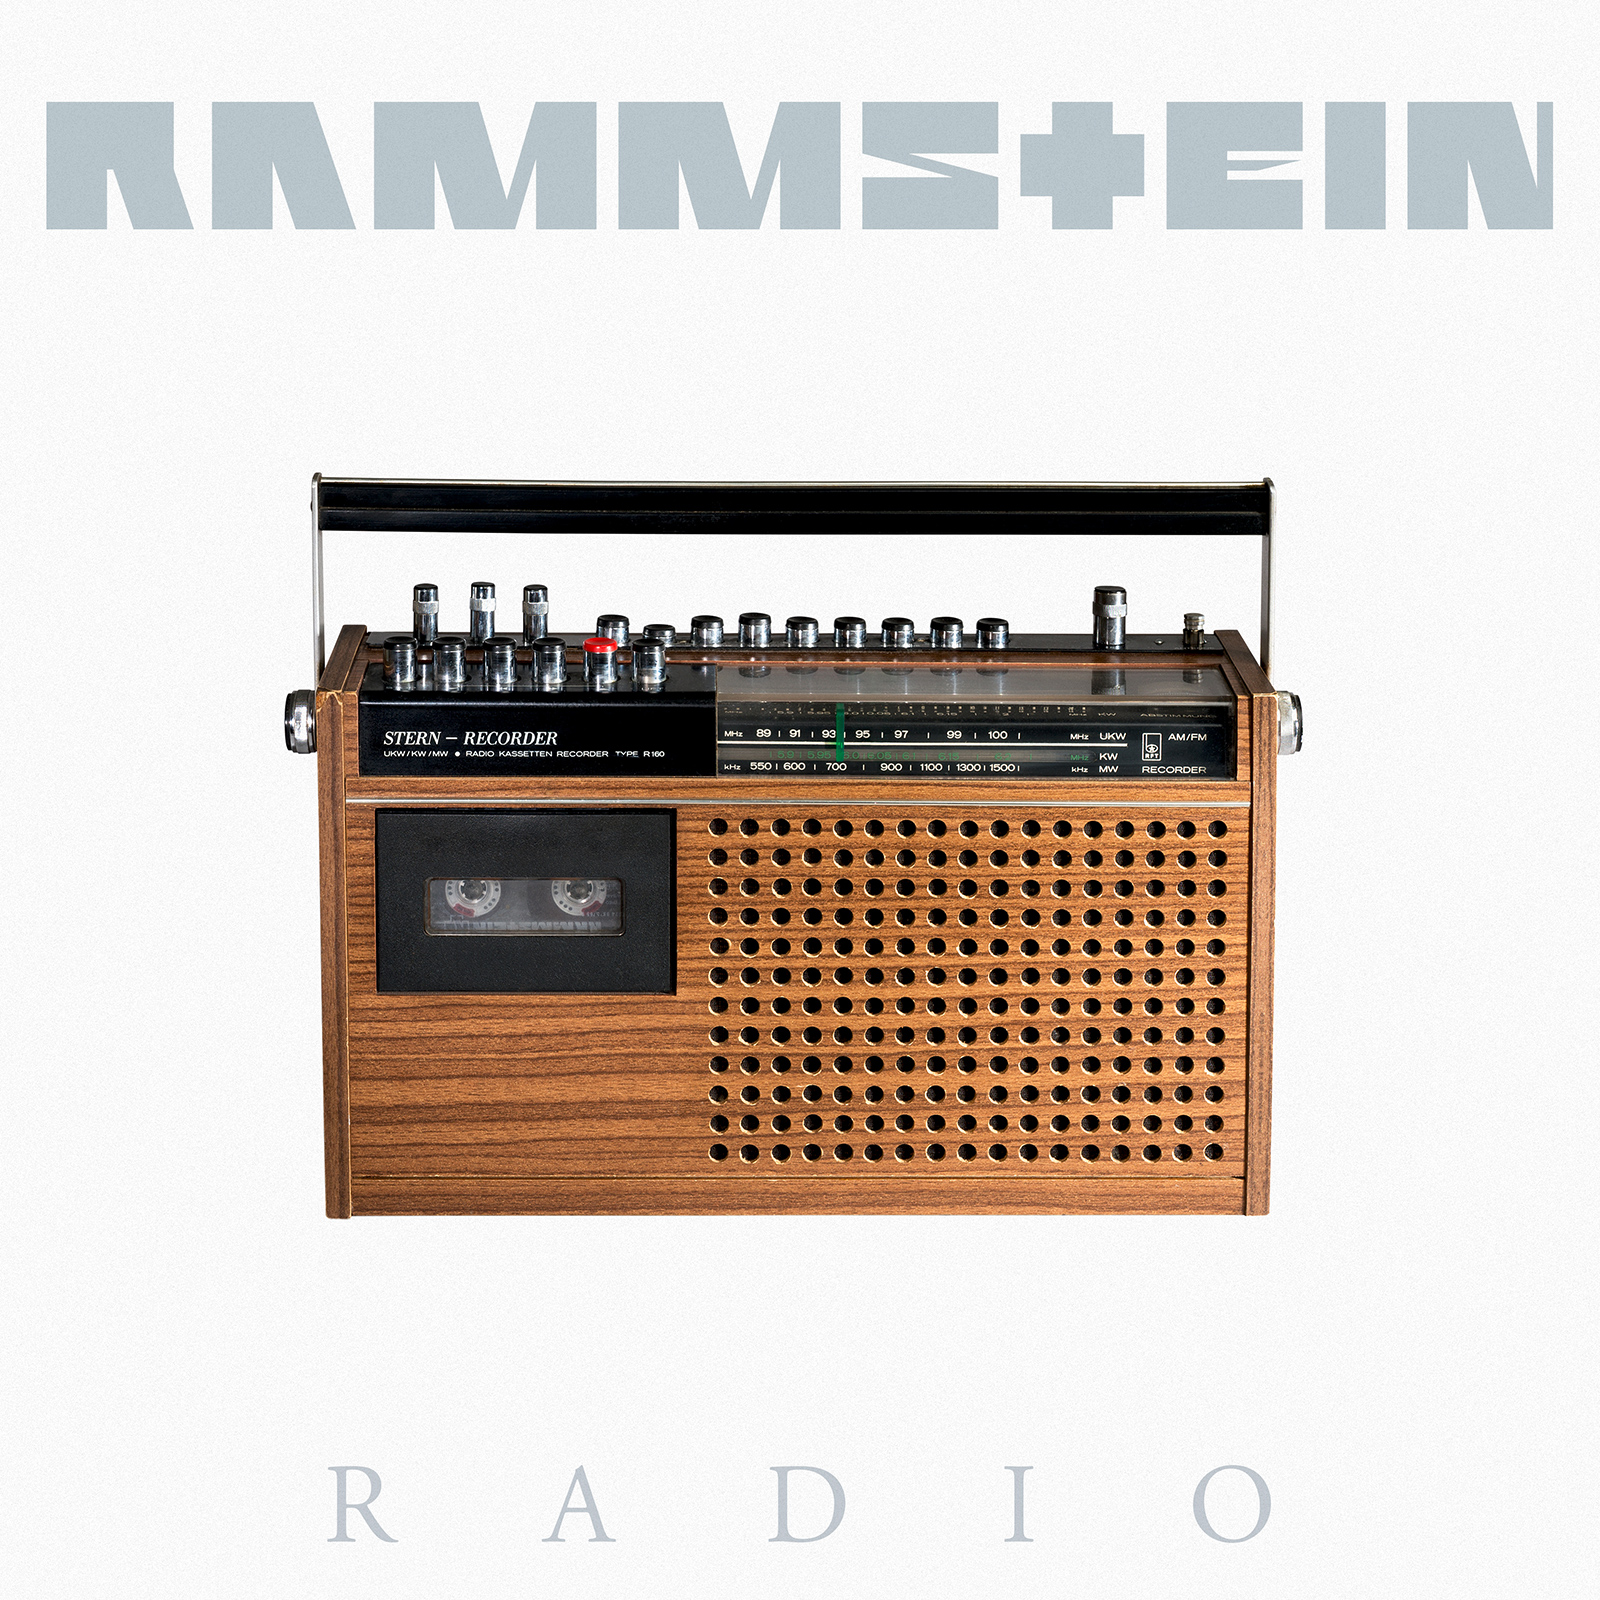 Rammstein. Album N 7. 17